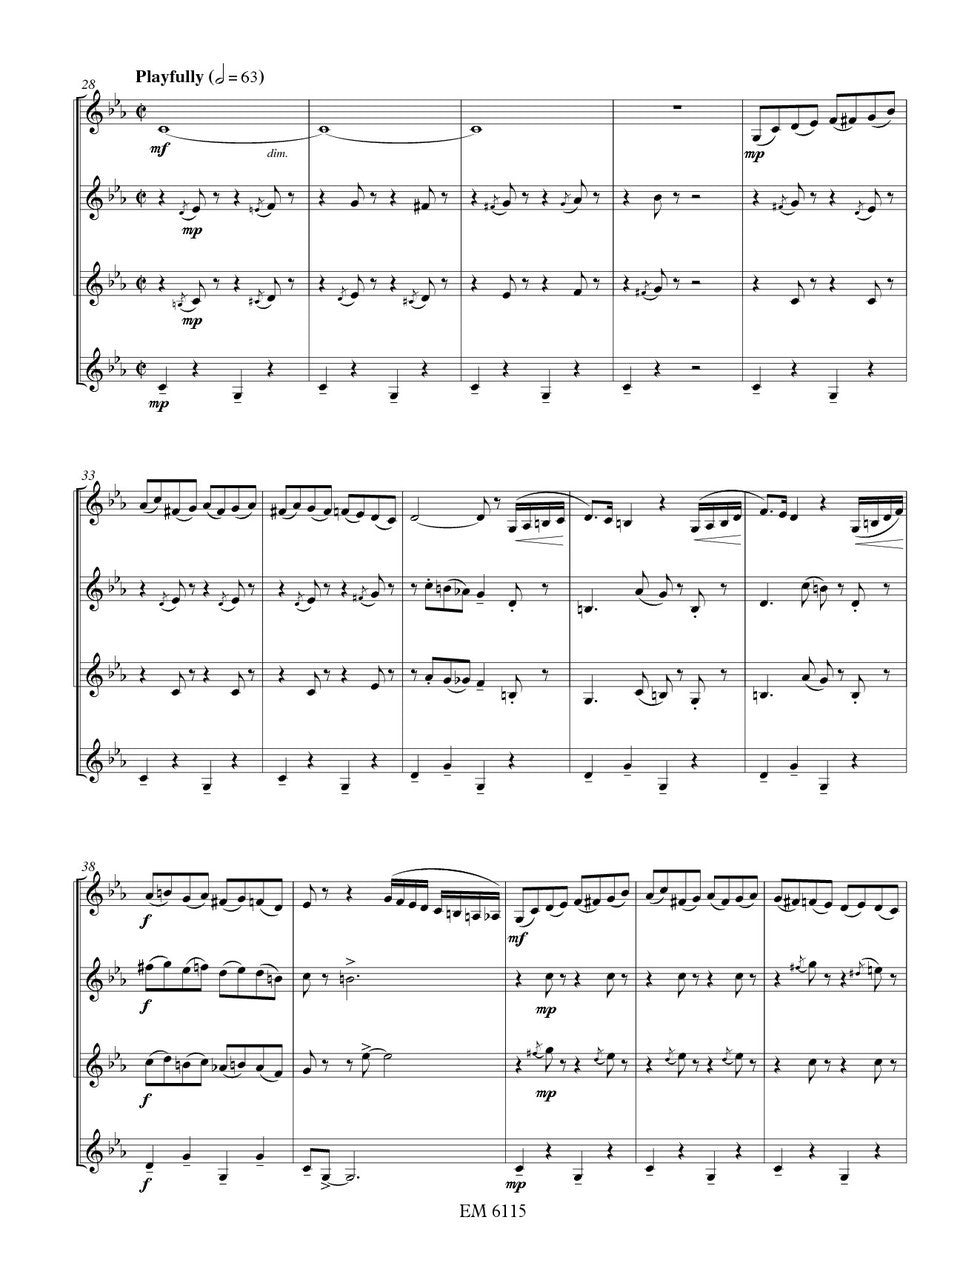 Hiketick - Jiddische Sjlimmert for Clarinet Quartet